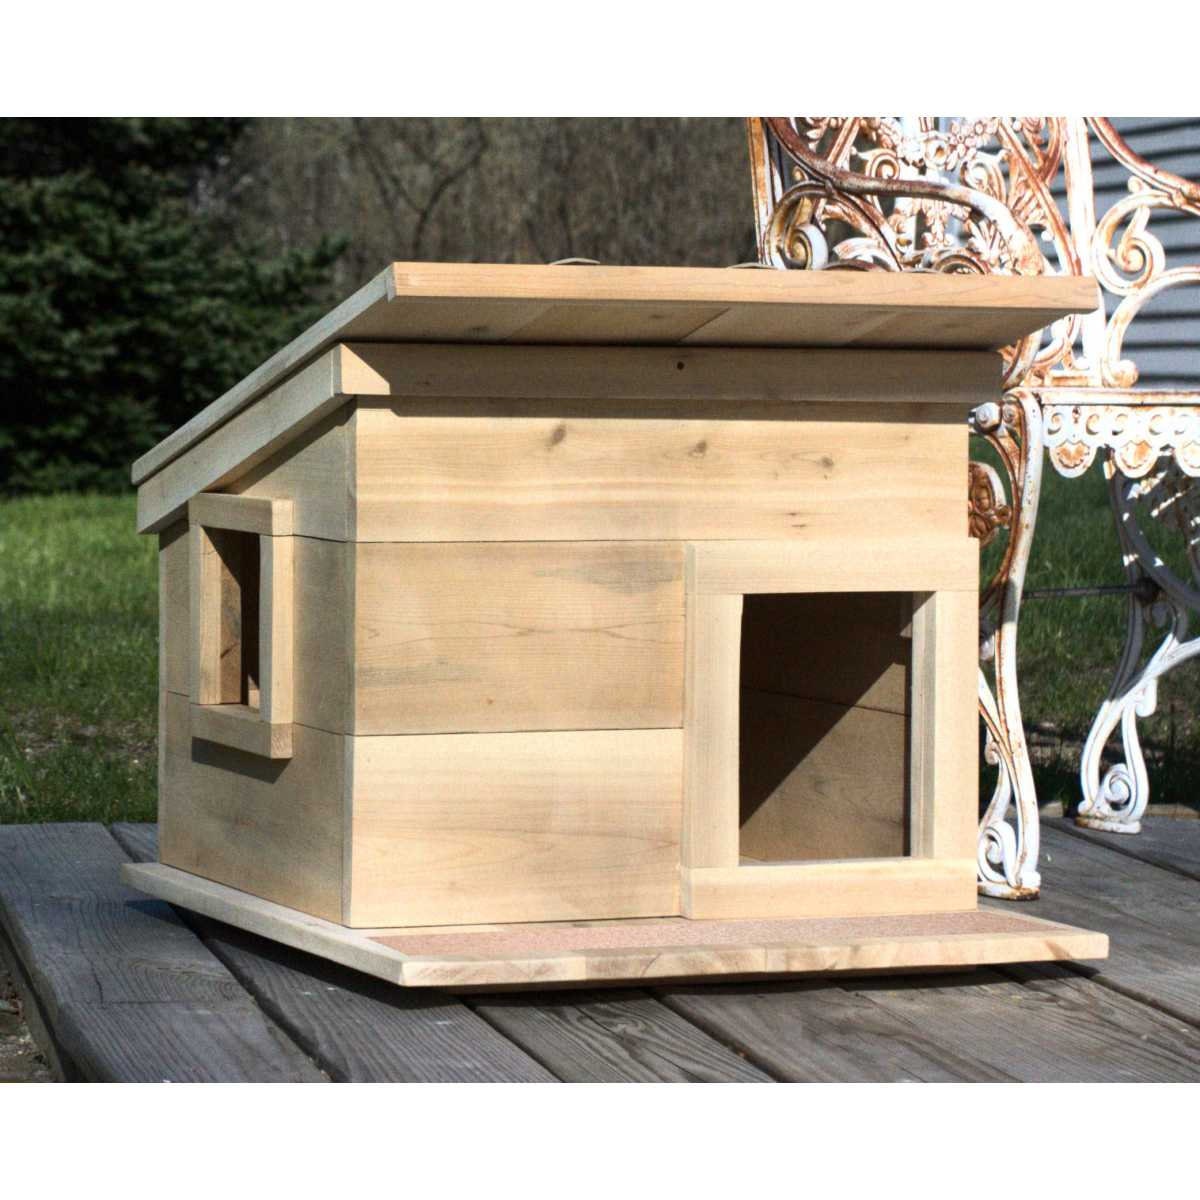 Full Insulation for Cat House 